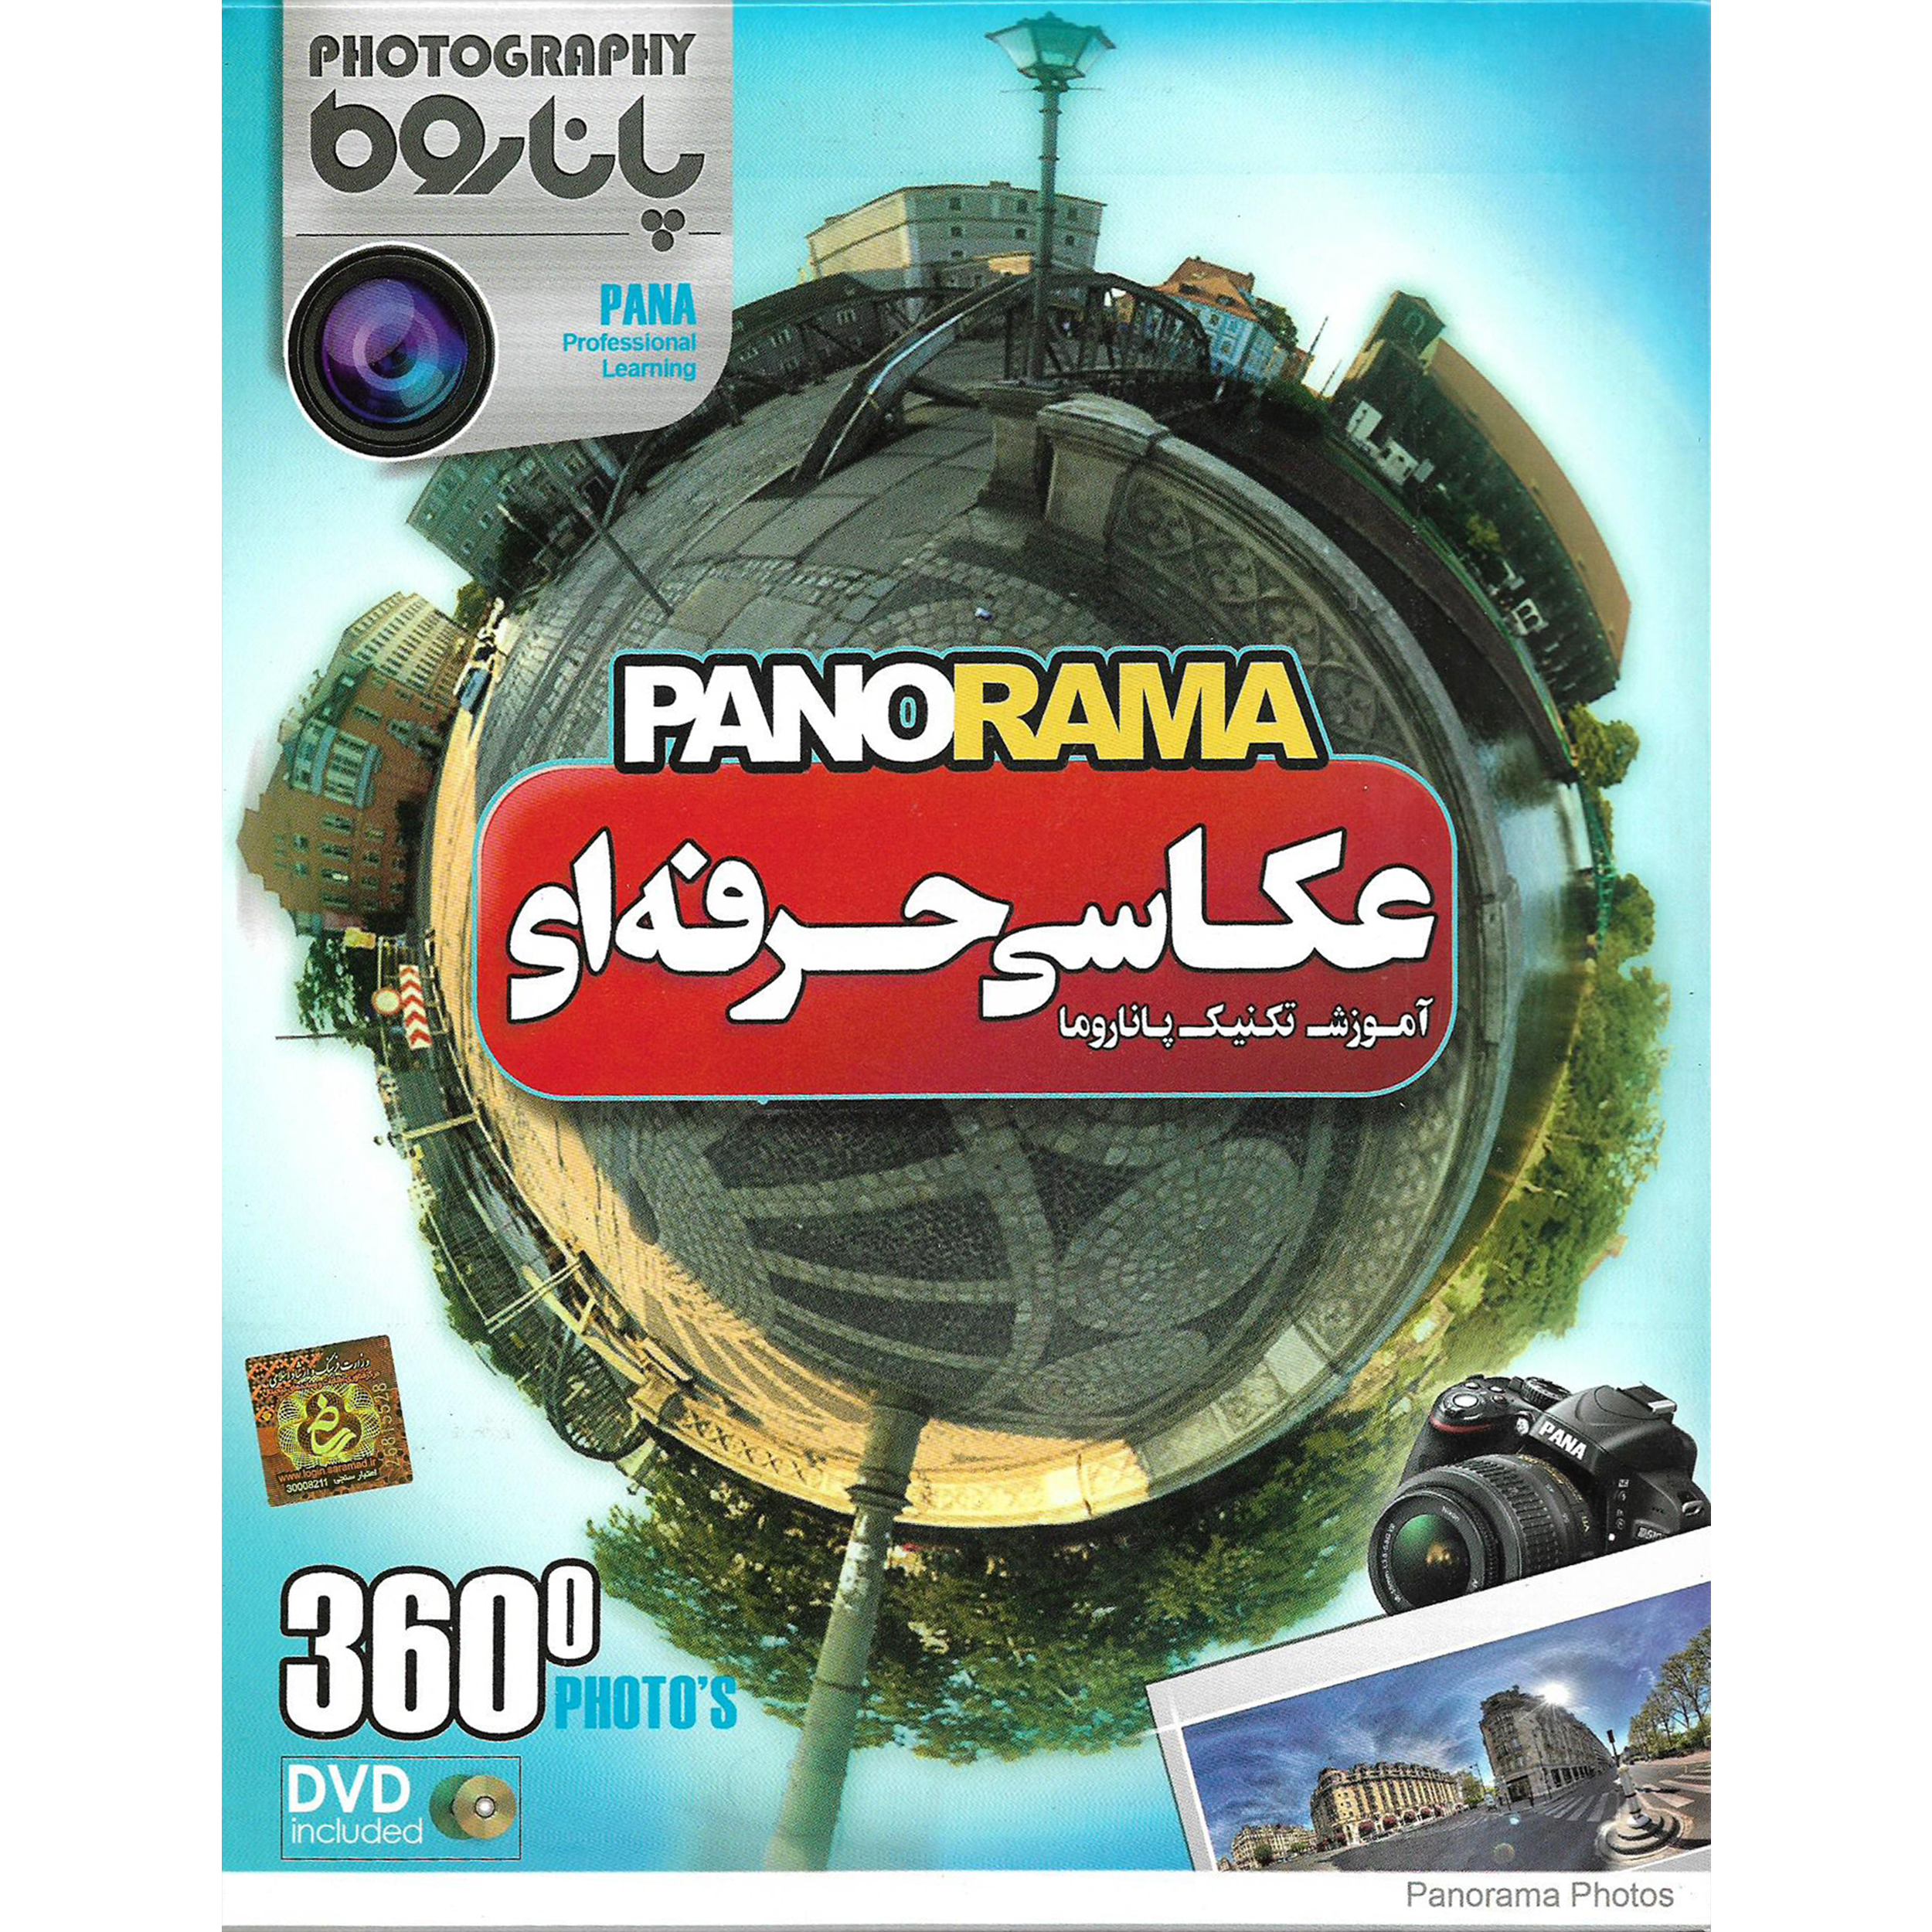 نرم افزار آموزش عکاسی حرفه ای PANORAMA نشر پاناپرداز